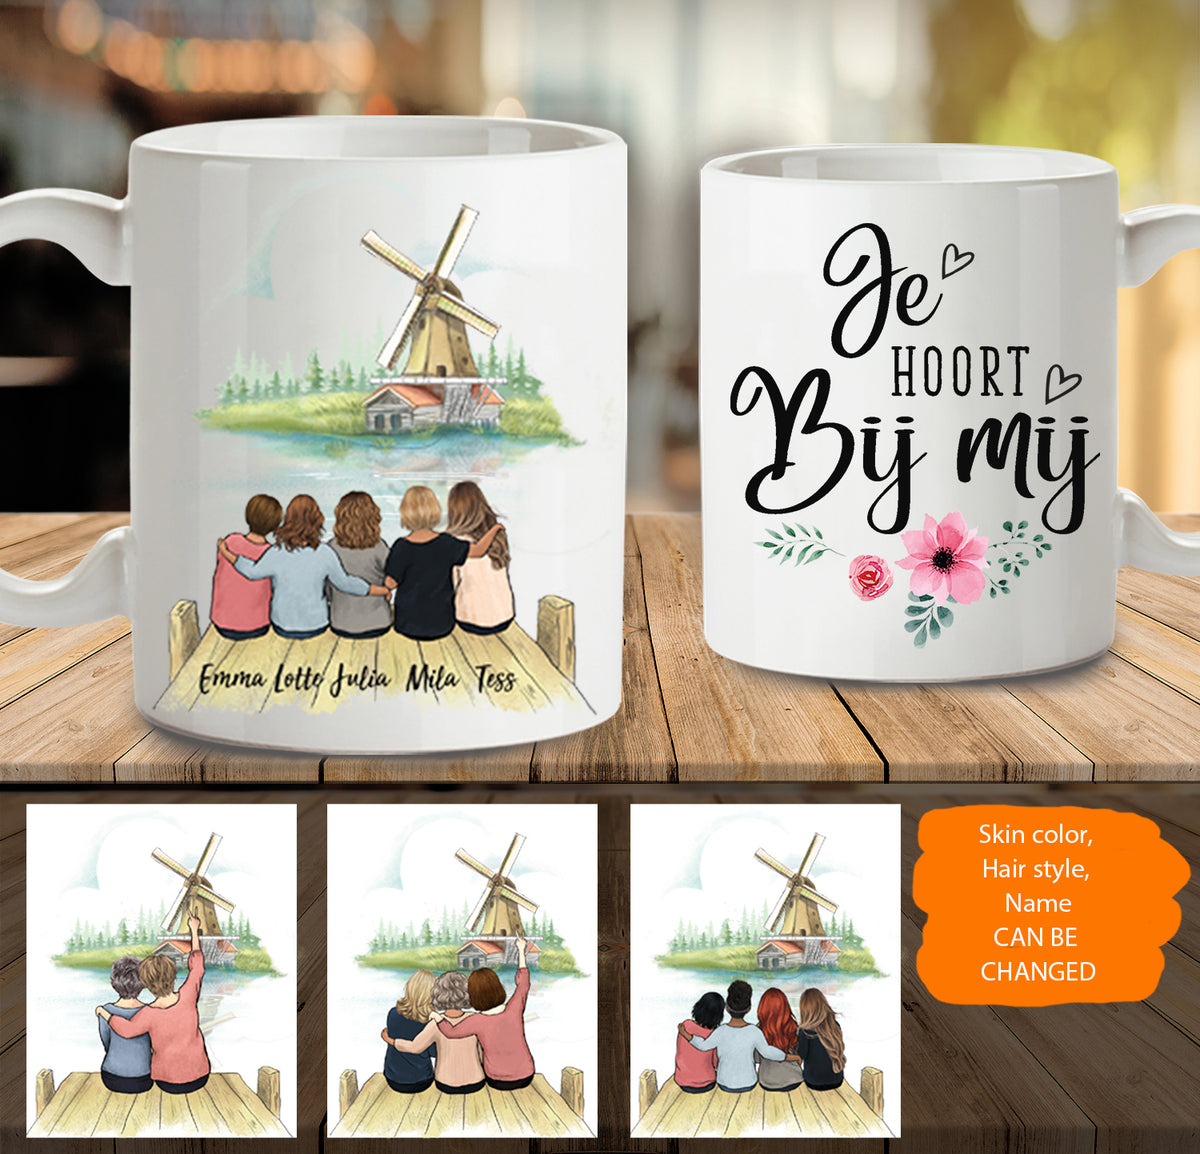 Personalized best friend gift ideas Coffee Mug Windmill Netherland - 2318